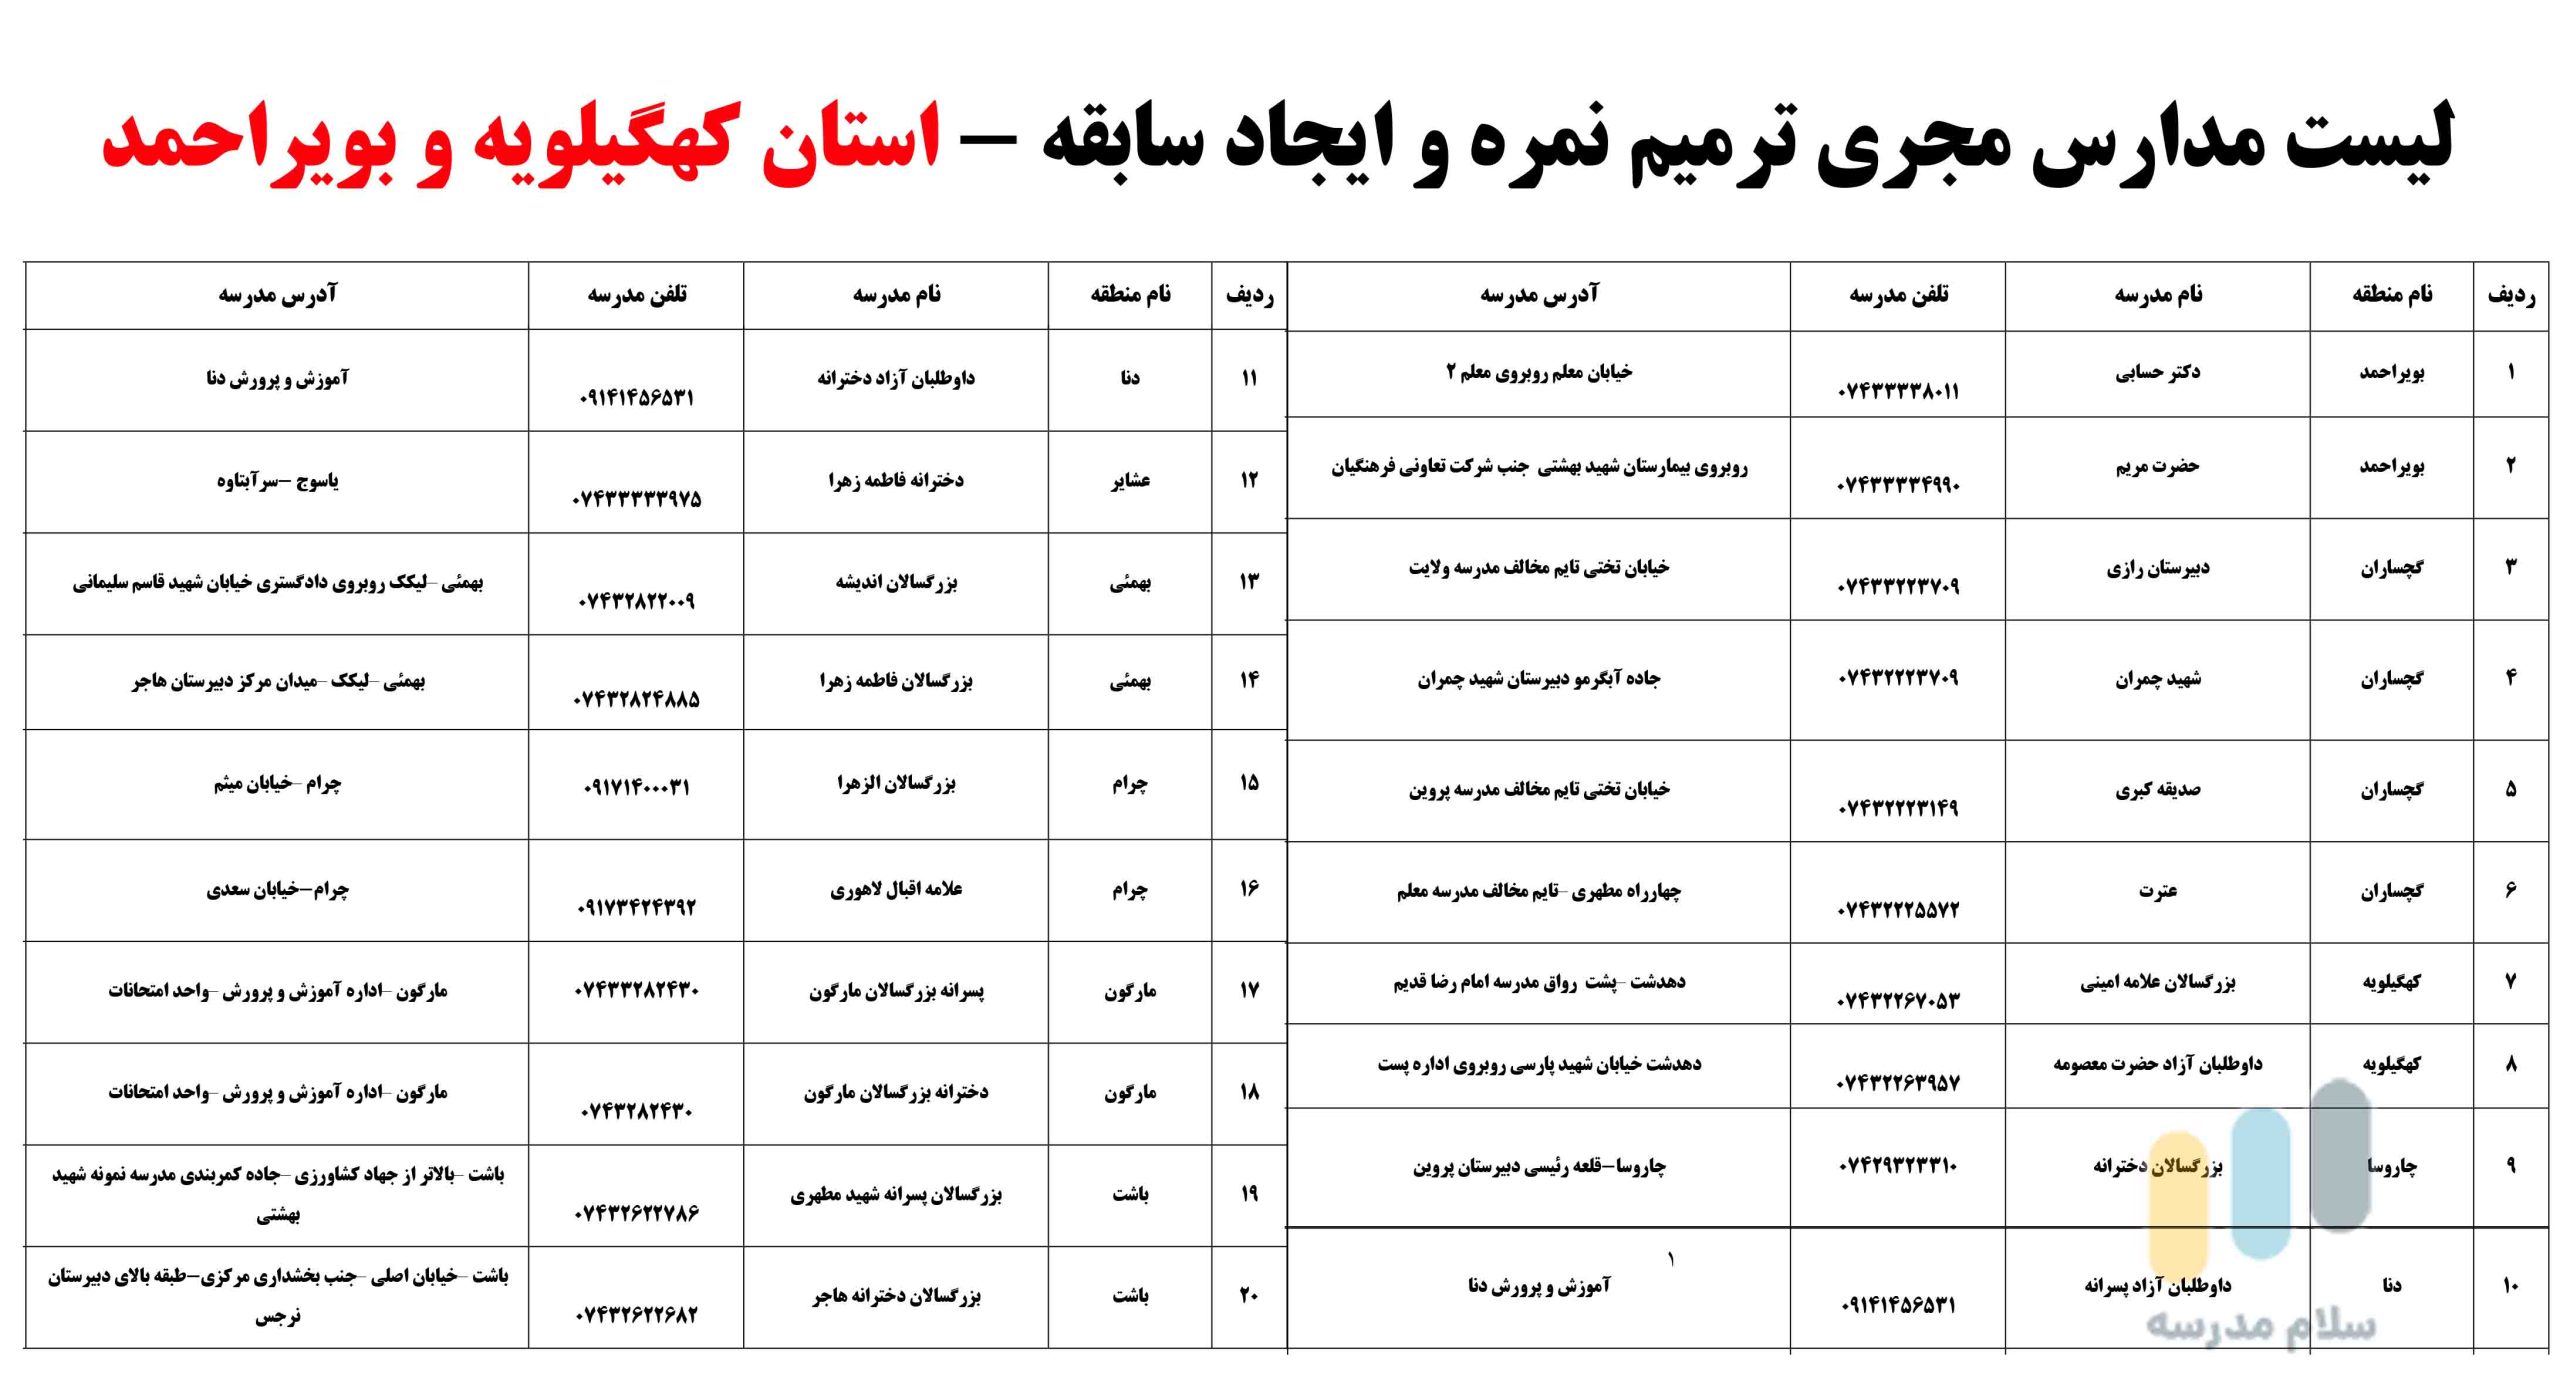 لیست مدارس بزرگسالان داوطلب آزاد مجری ثبت نام امتحان ترمیم نمره در استان کهگیلویه و بویراحمد